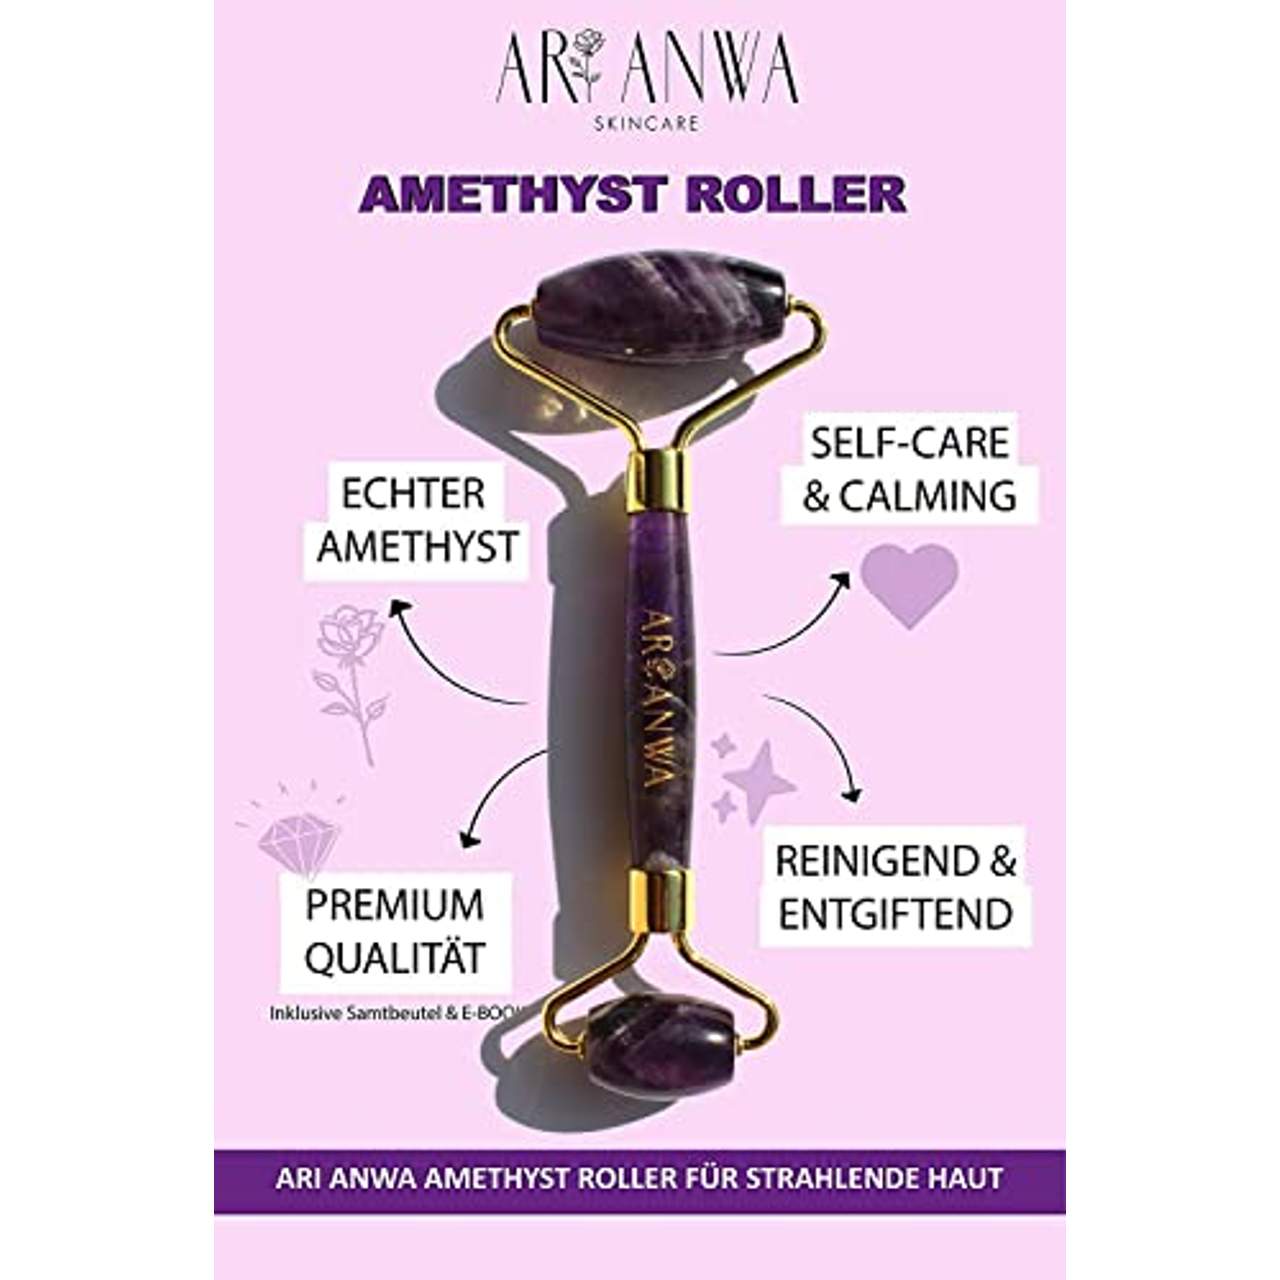 ARI ANWA Skincare Premium Amethyst Roller